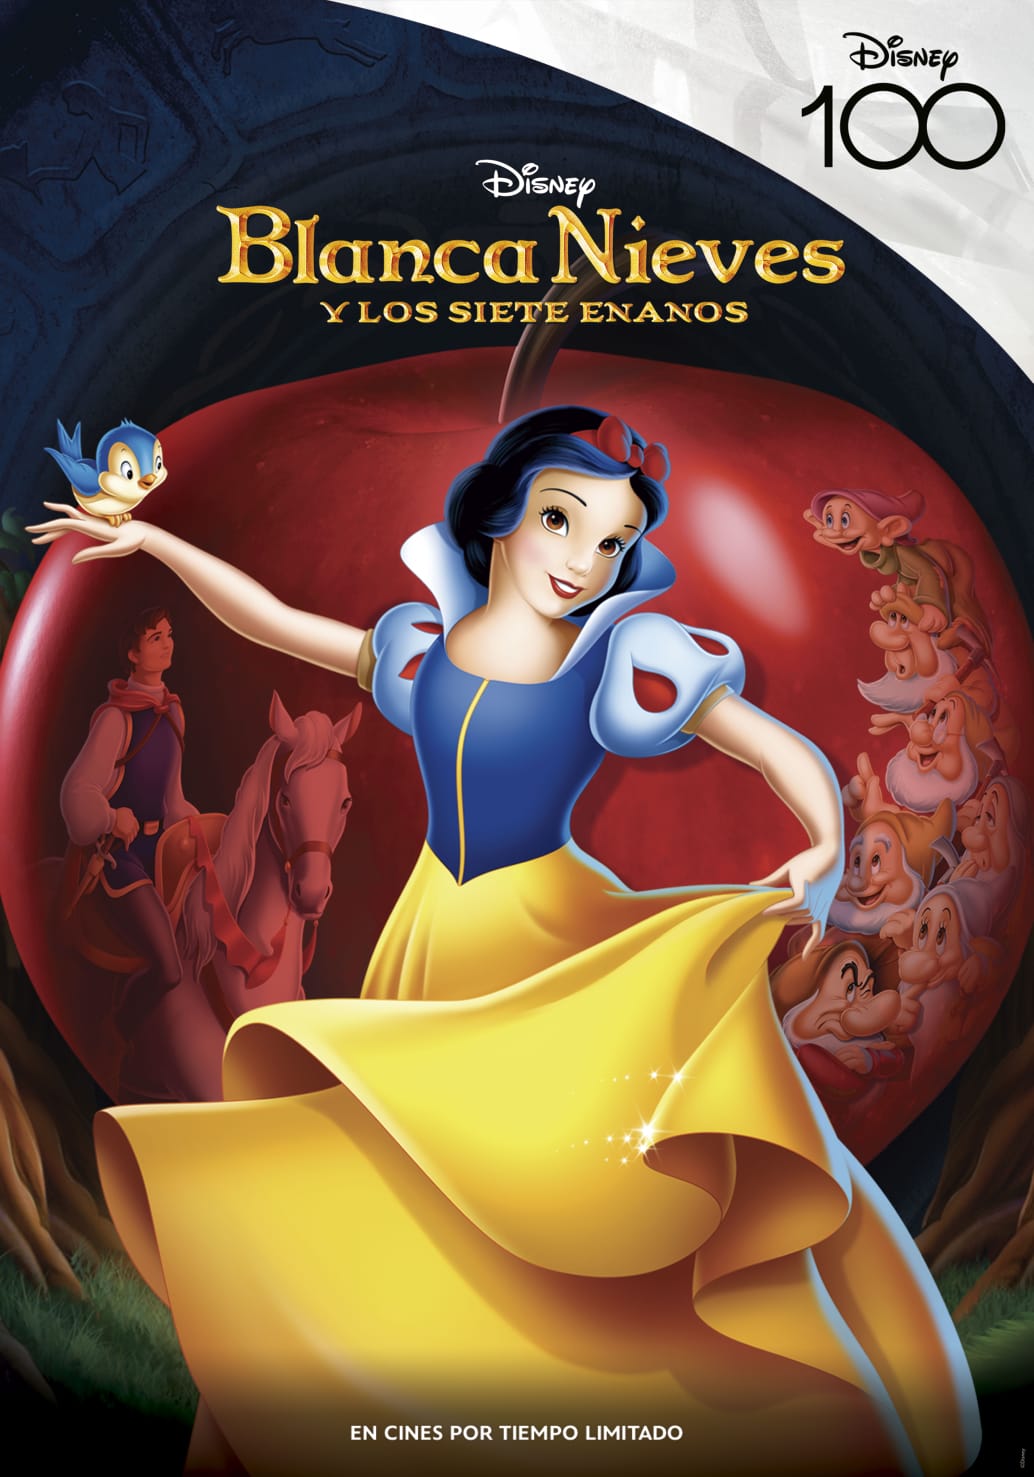 Los clásicos animados de Disney regresan a cines para celebrar su 100° Aniversario 40